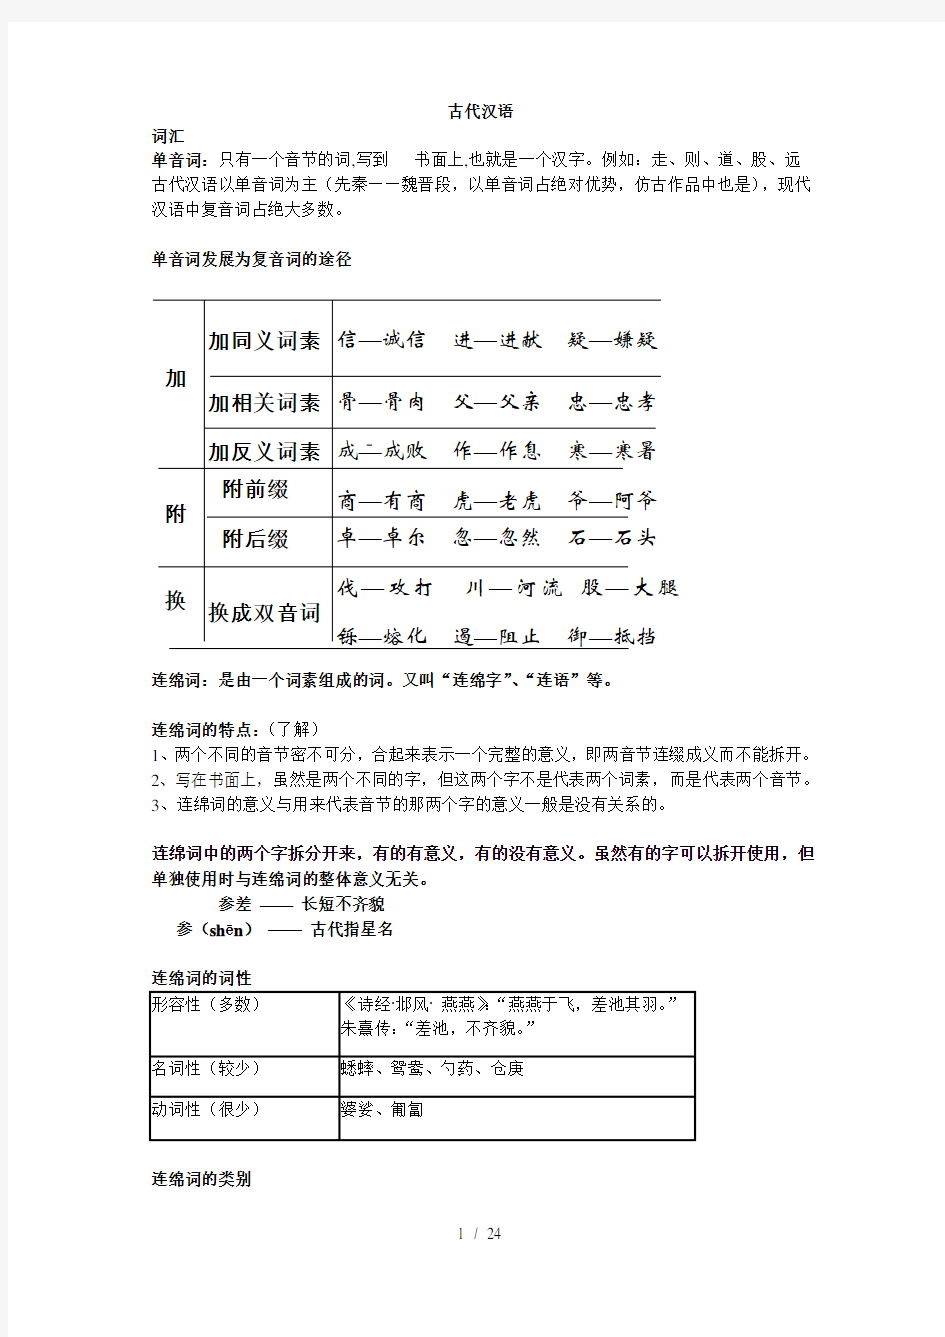 (完整版)古代汉语考试整理